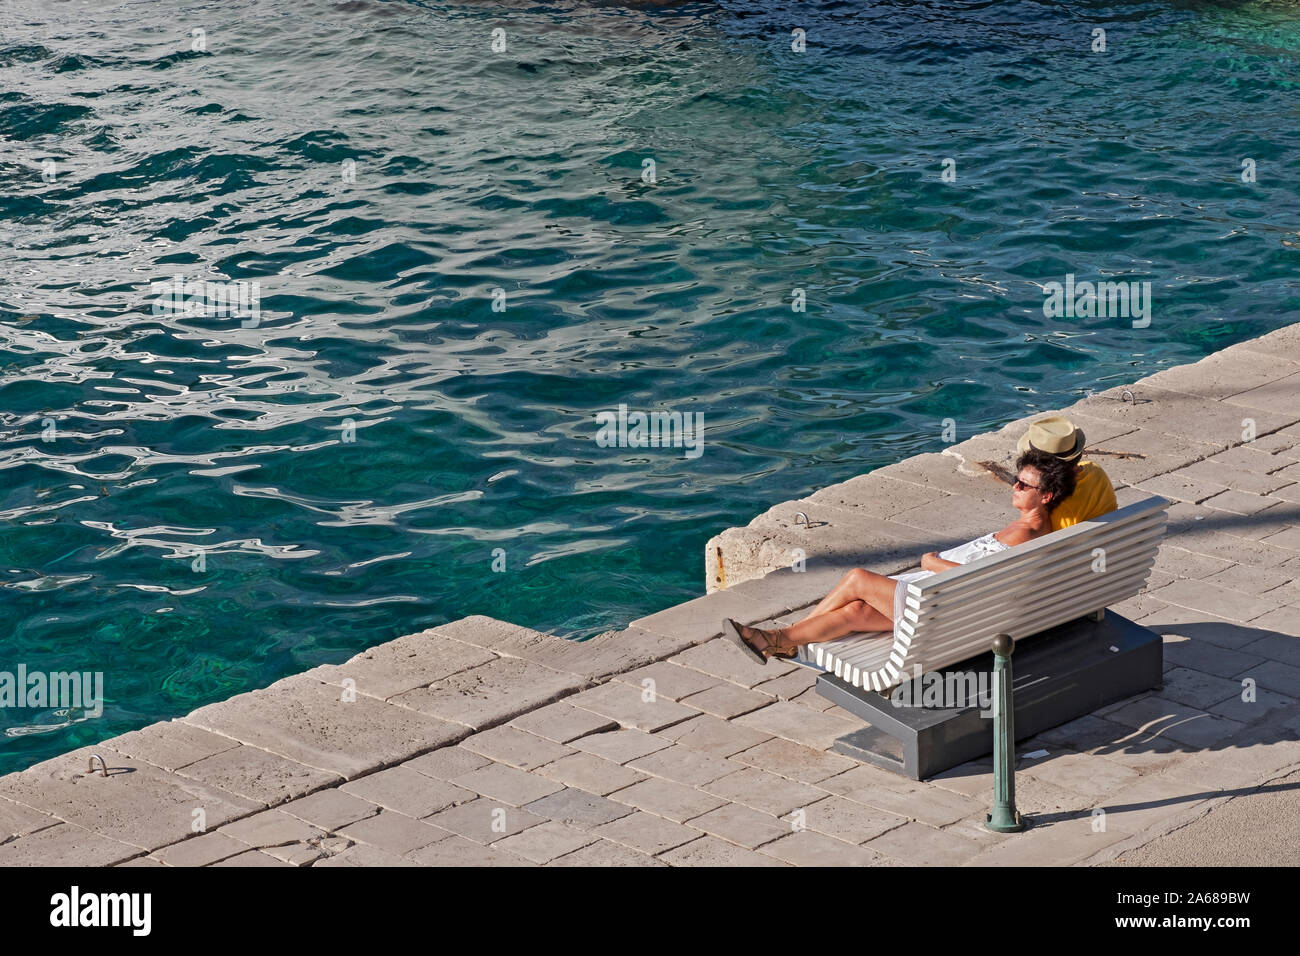 Un couple d'âge moyen, probablement marié, se détendre seul dans ses pensées, sur un banc à la côte adriatique croate dans l'île de Korcula. Banque D'Images